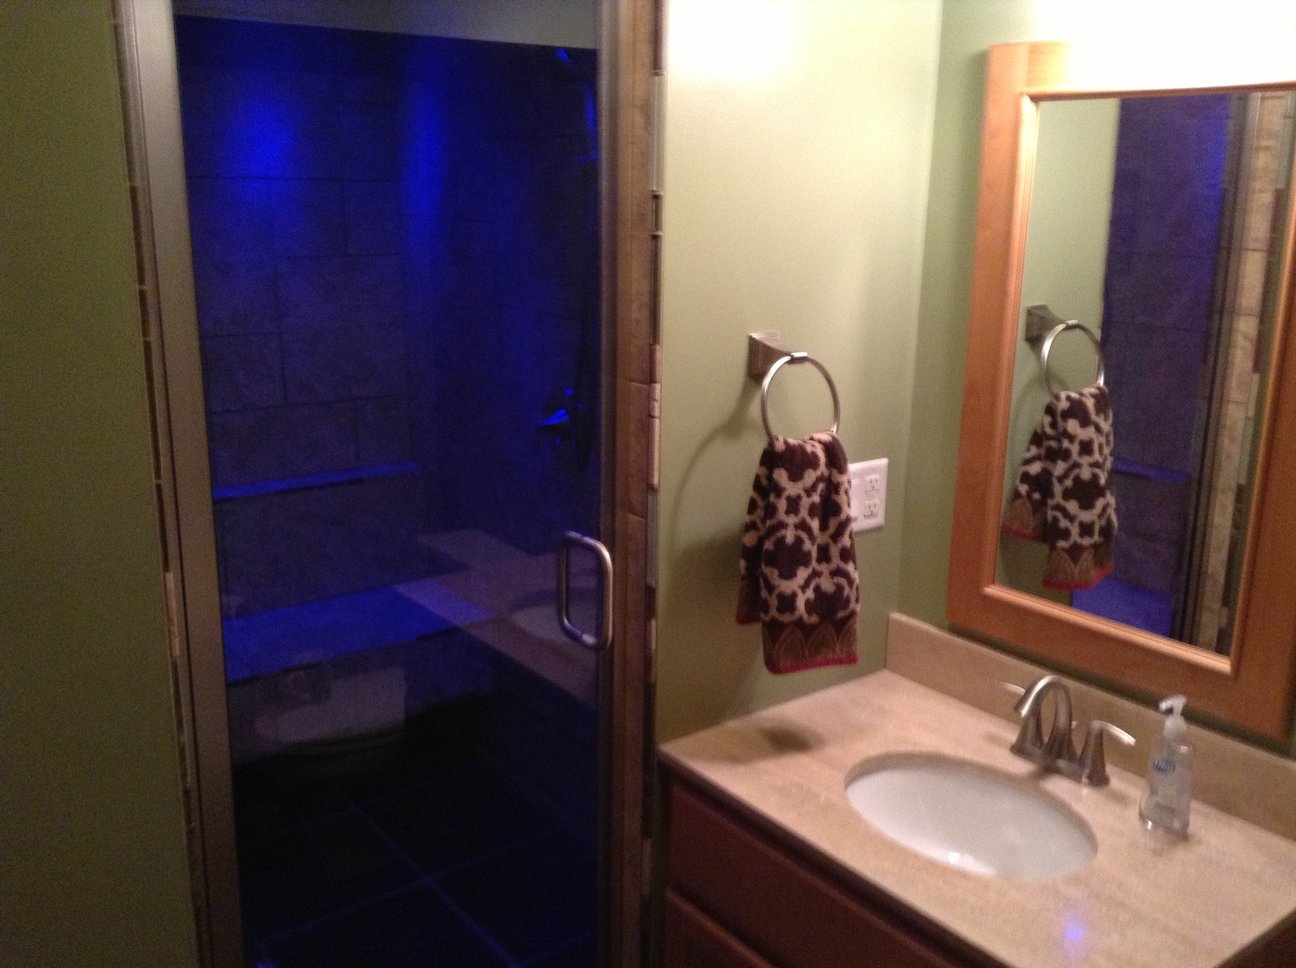 Milwaukee bathroom plumbing renovation